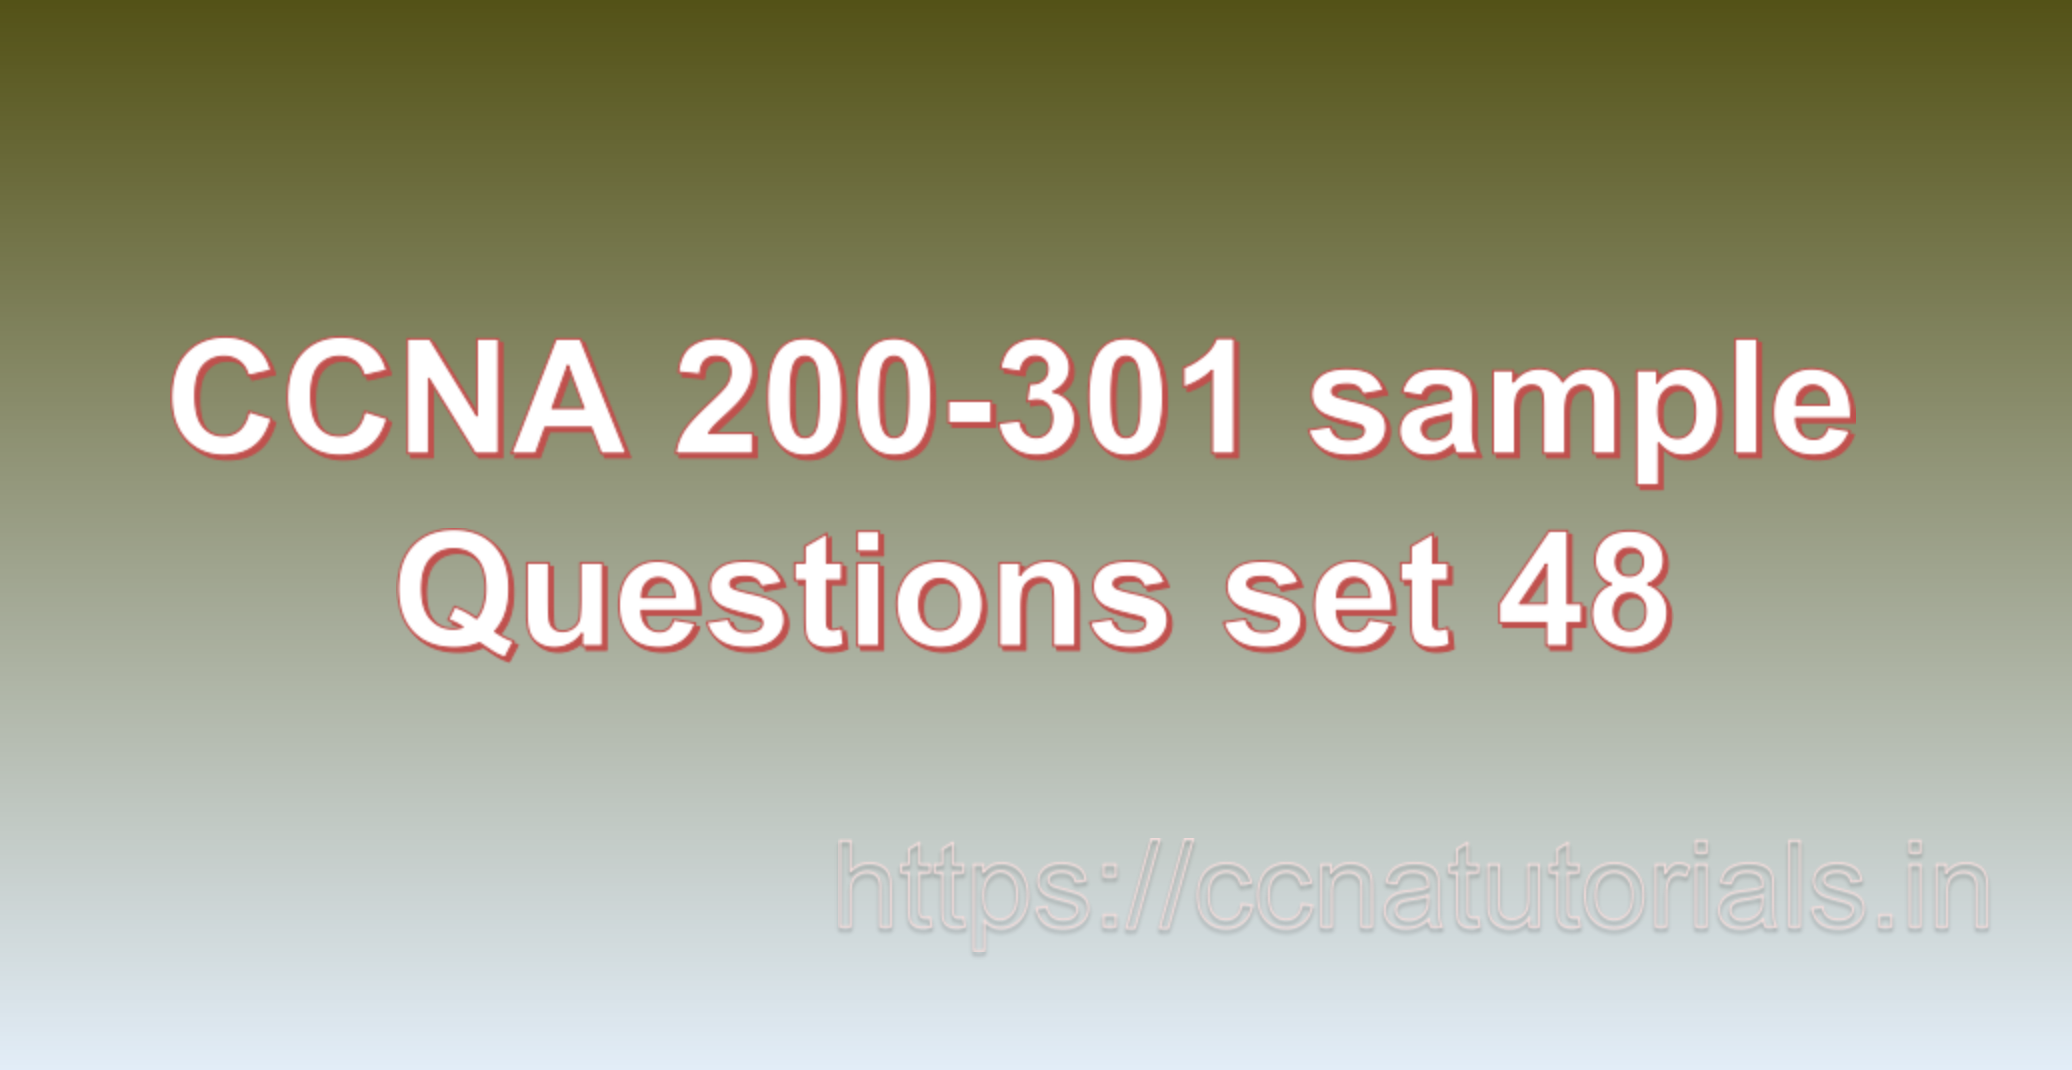 ccna sample questions set 48, ccna tutorials, CCNA Exam, ccna